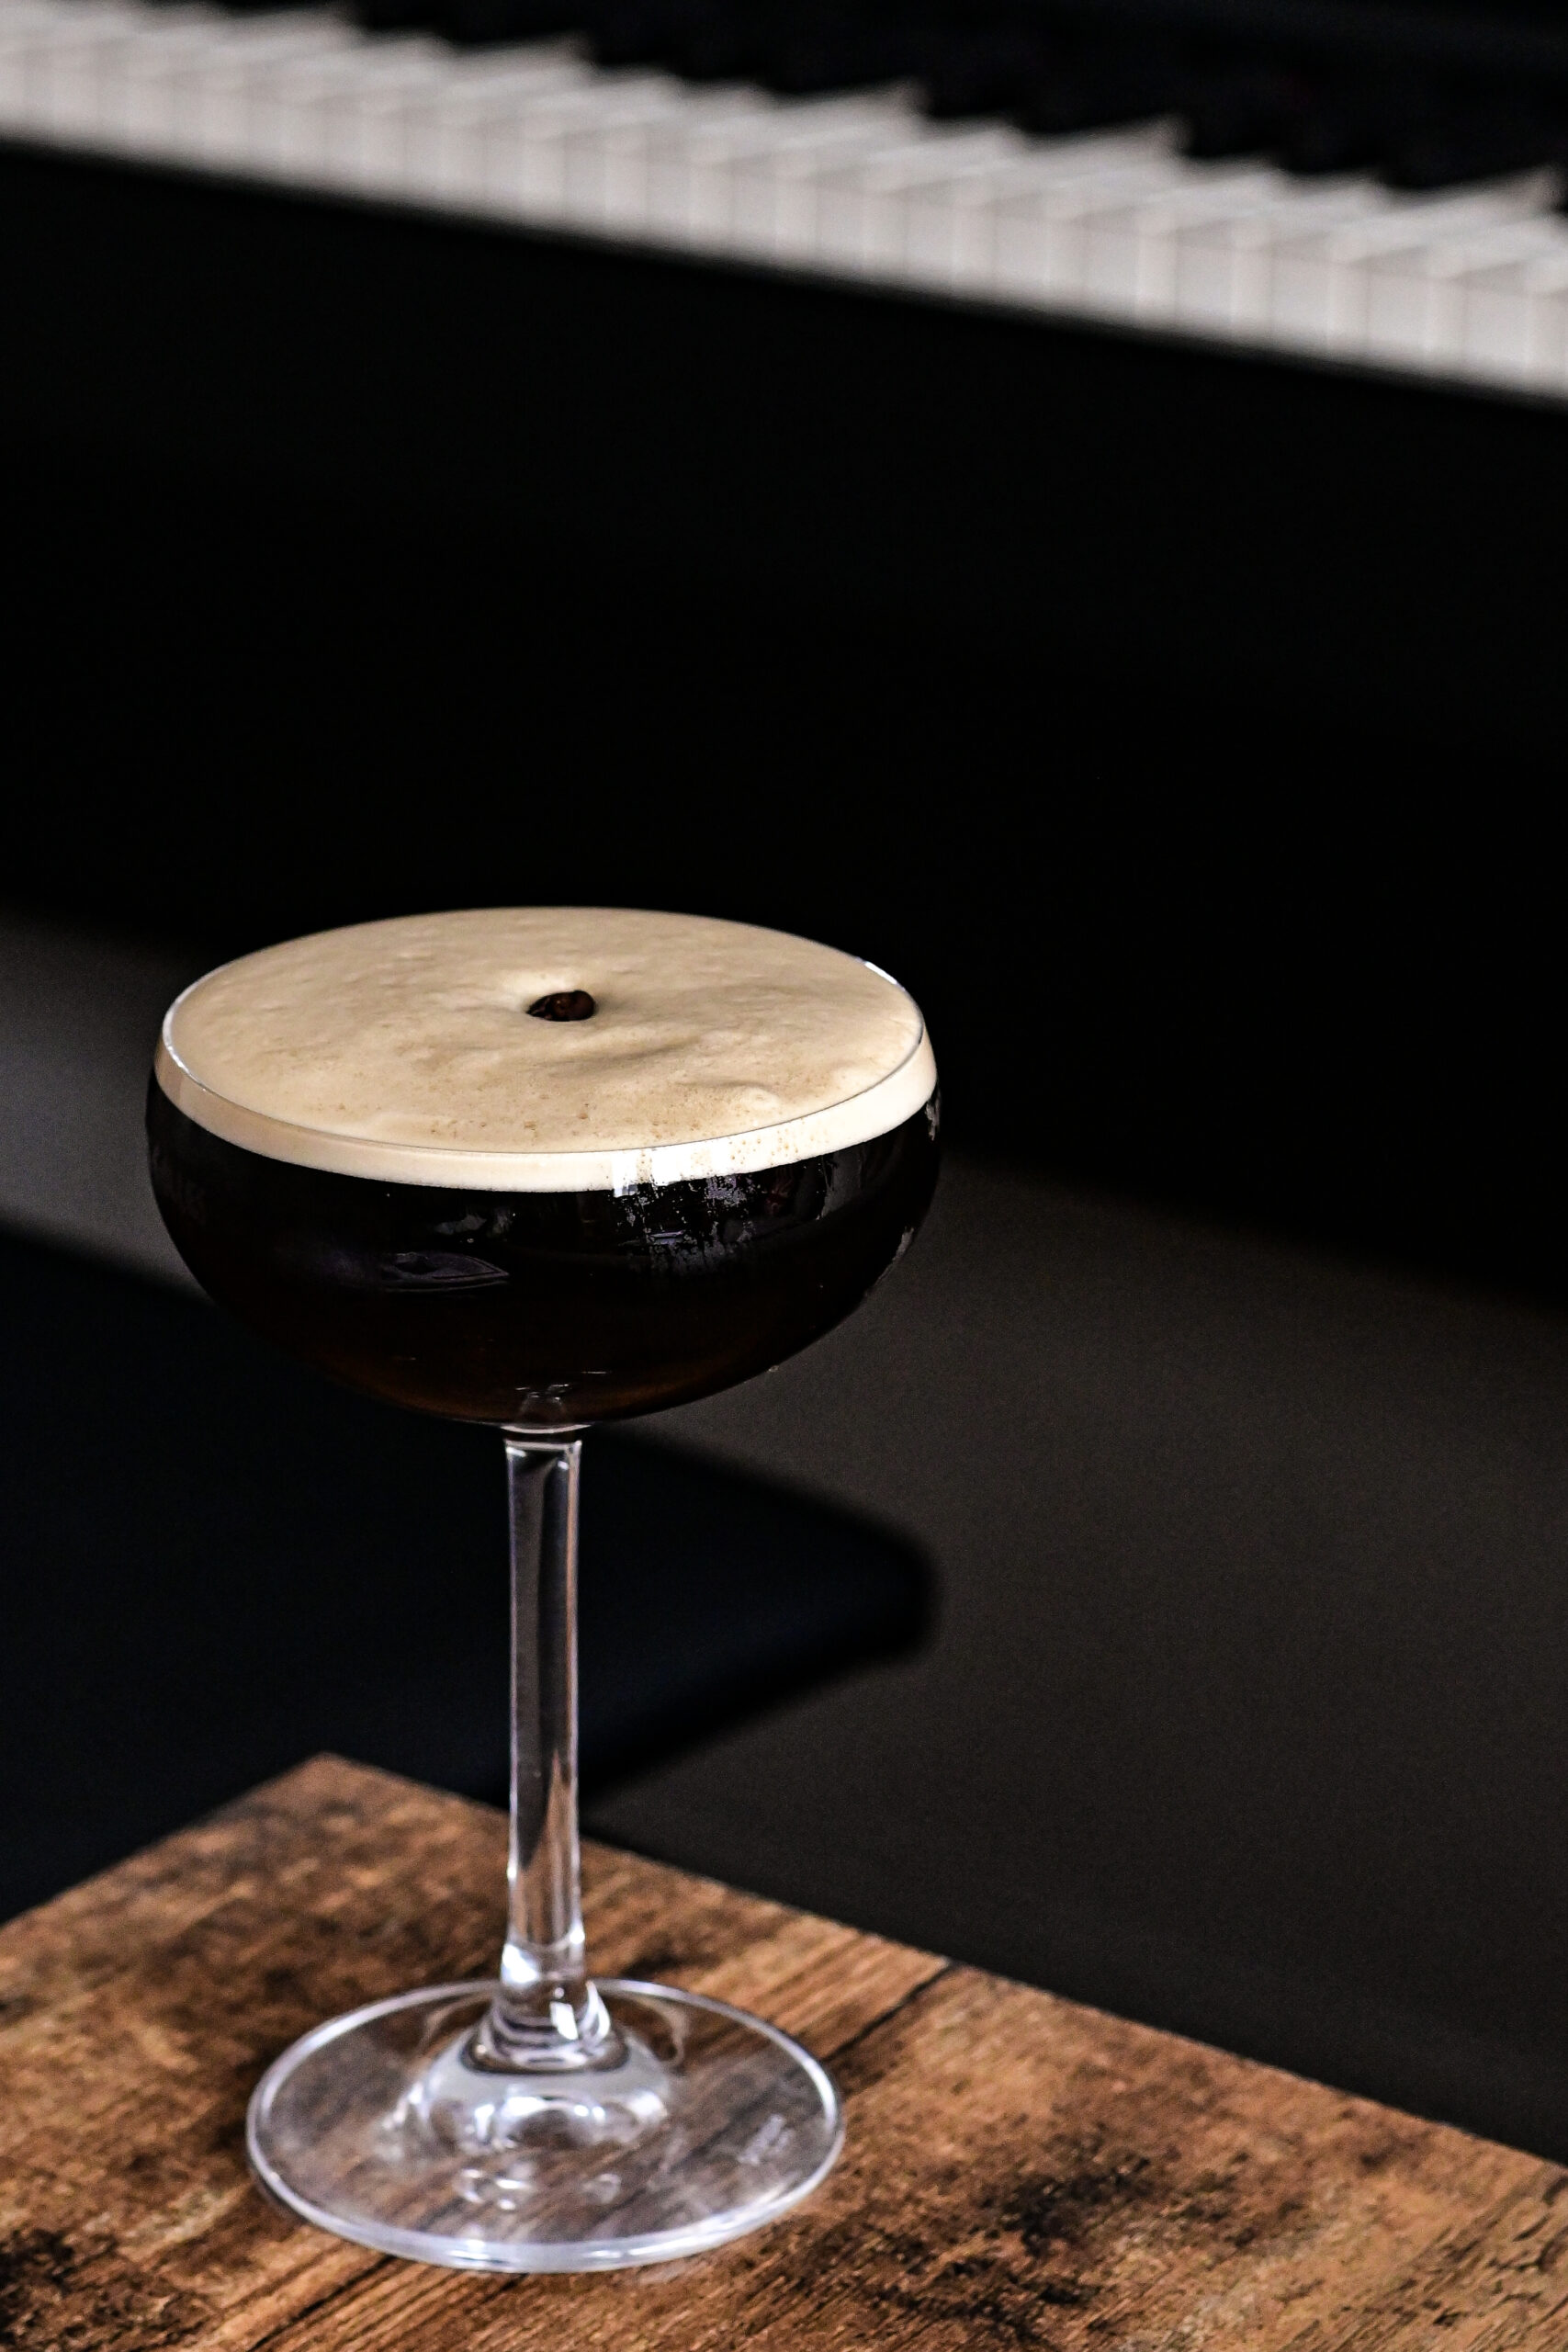 My quest for the perfect Espresso Martini